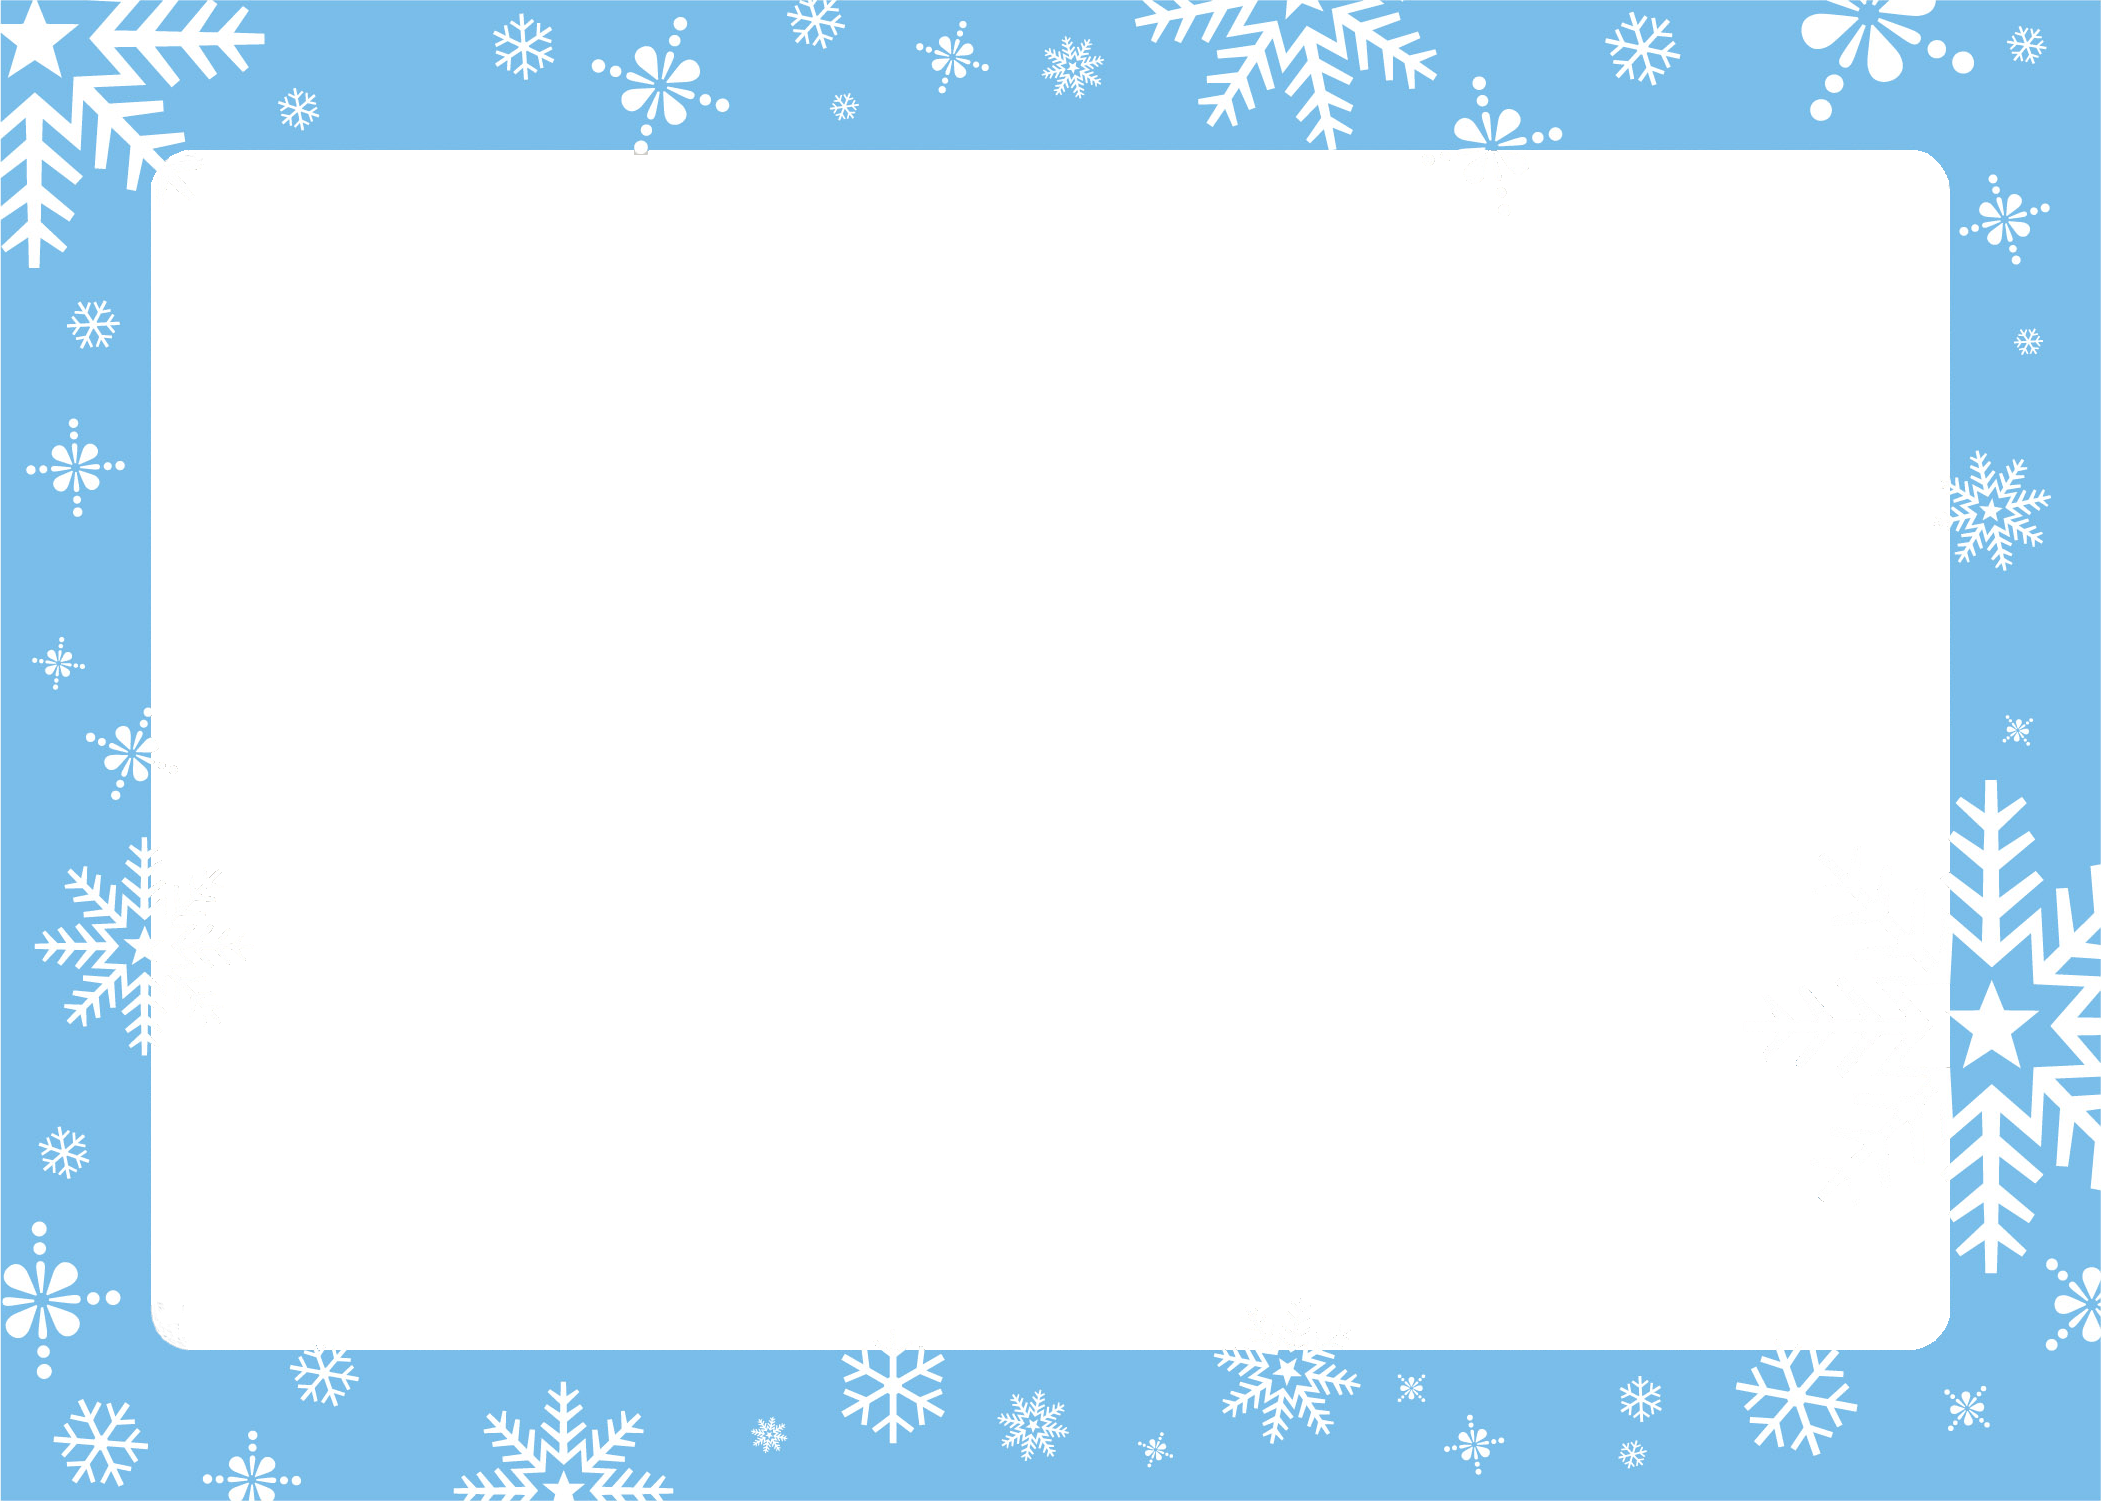 Download PNG image - Blue Christmas Frame Download PNG Image 